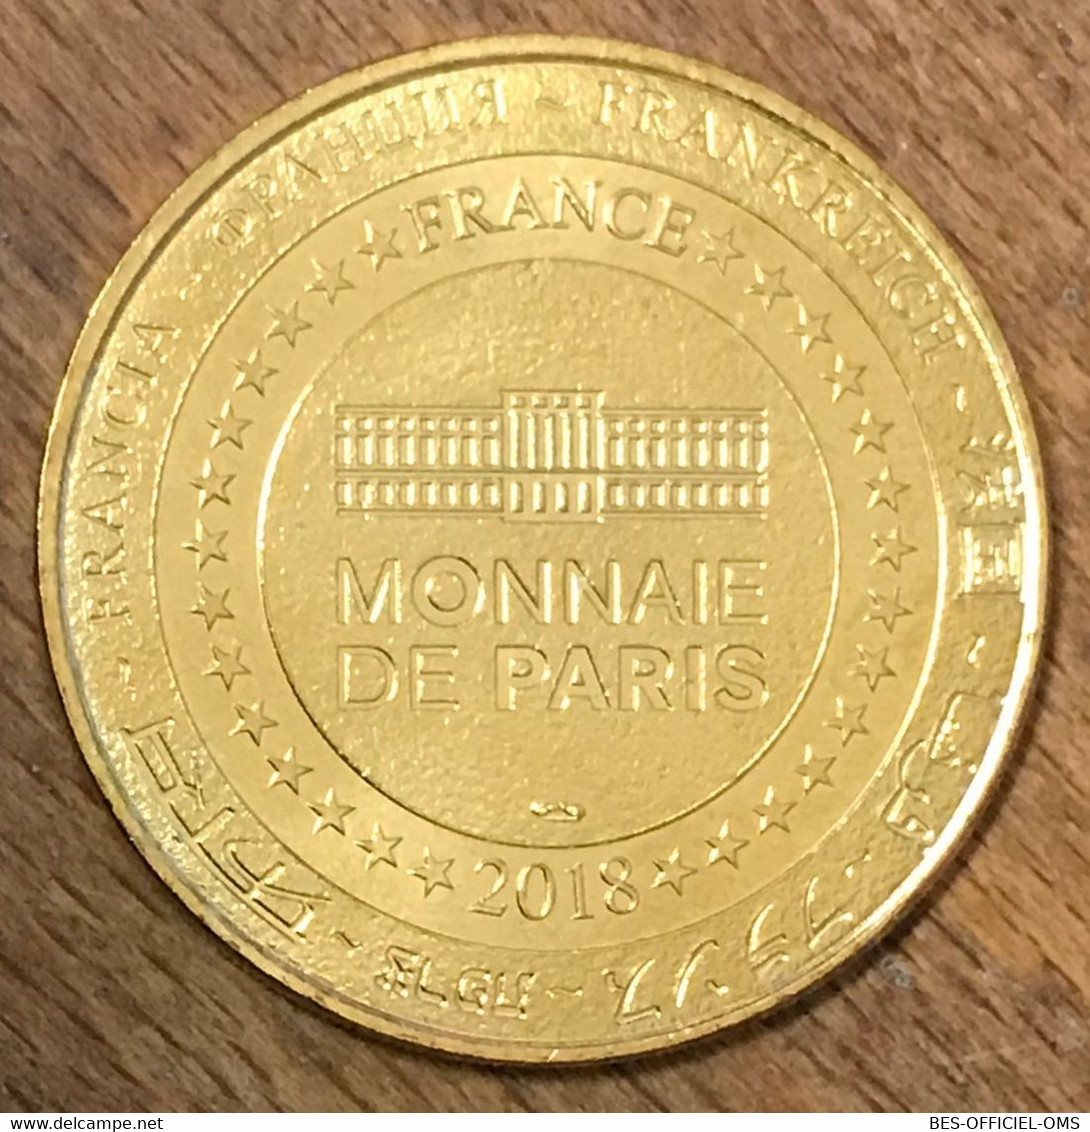 75006 MONNAIE DE PARIS 2018 NG INT MÉDAILLE SOUVENIR MONNAIE DE PARIS JETON TOURISTIQUE MEDALS COINS TOKENS - 2018